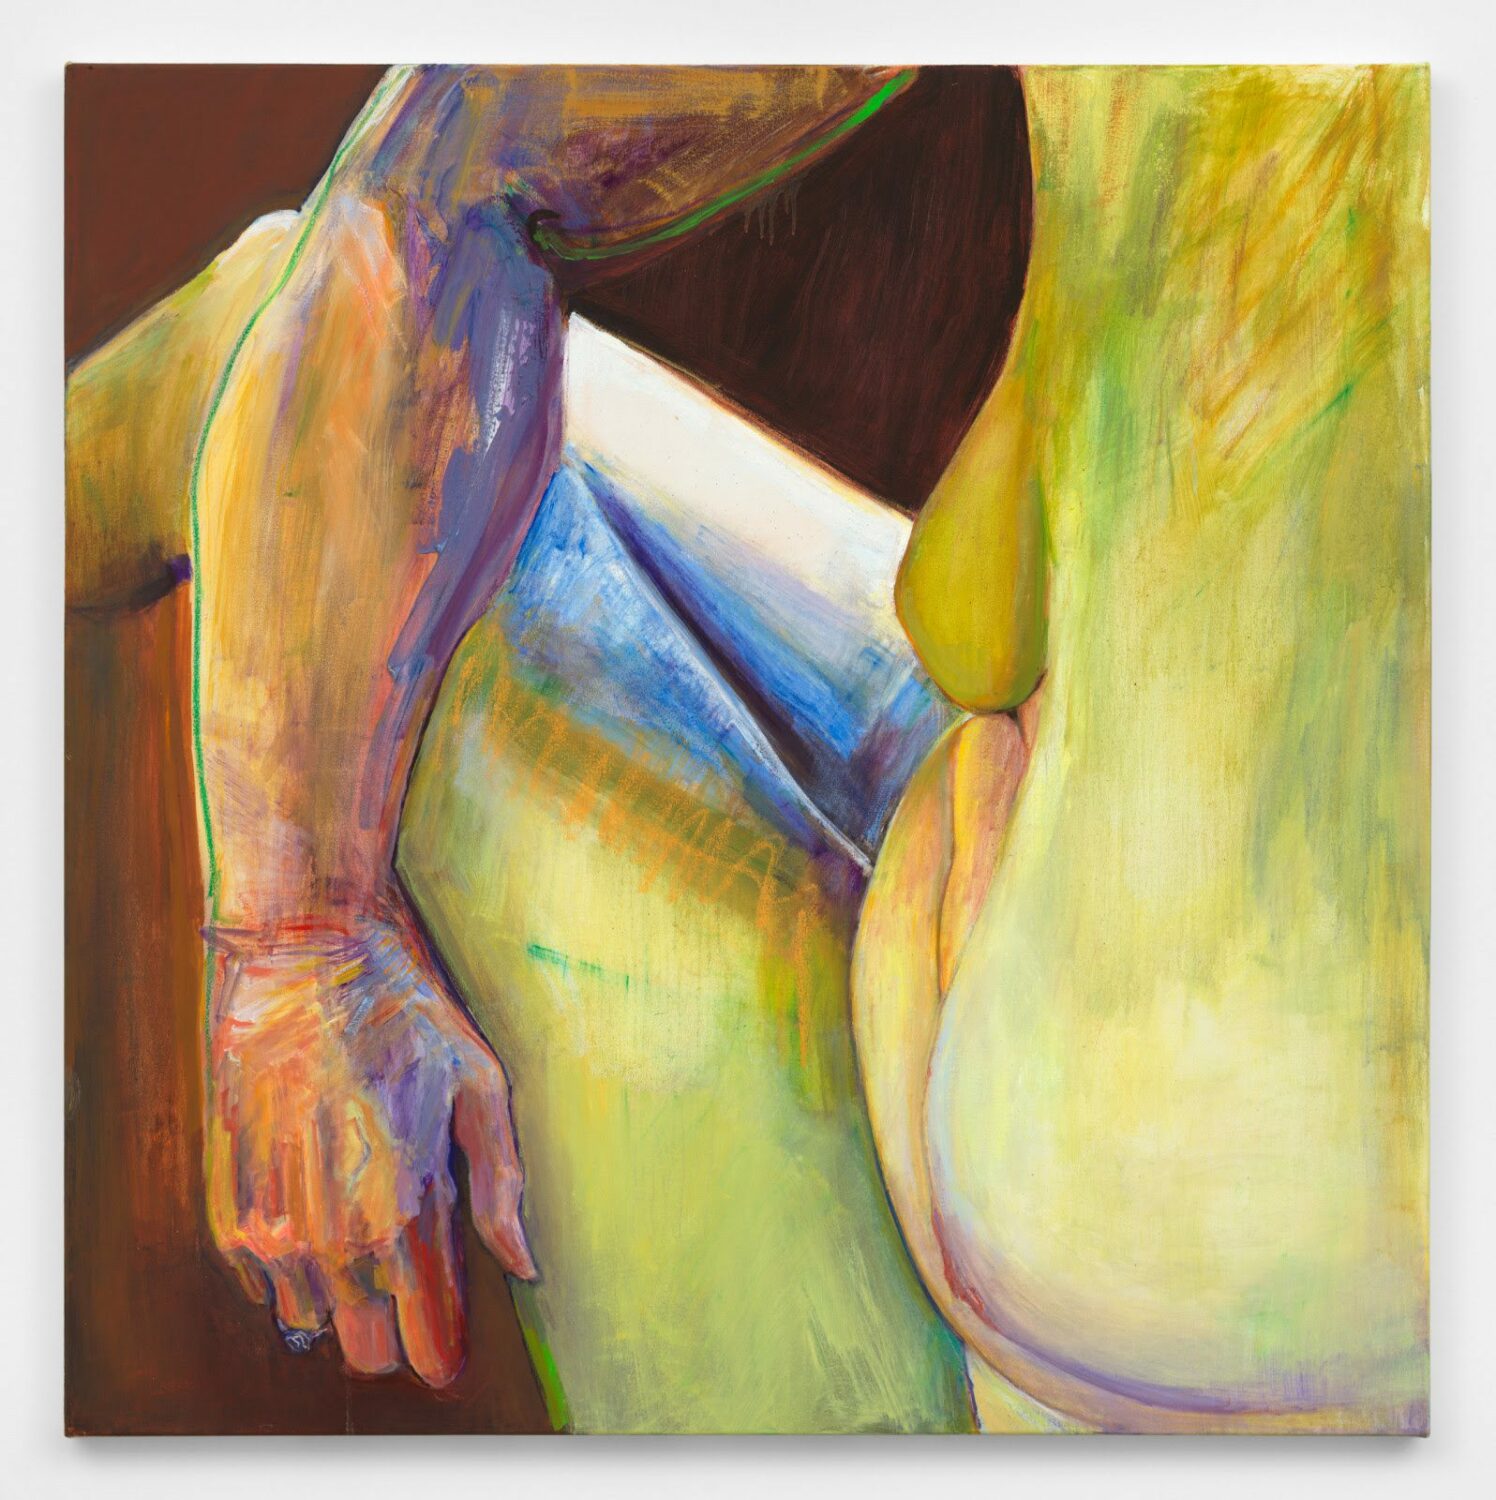 Joan Semmel, Armed, 2020, oil on canvas, 48h x 48w x 1 1/2d in (121.9h x 121.9w x 3.8d cm)